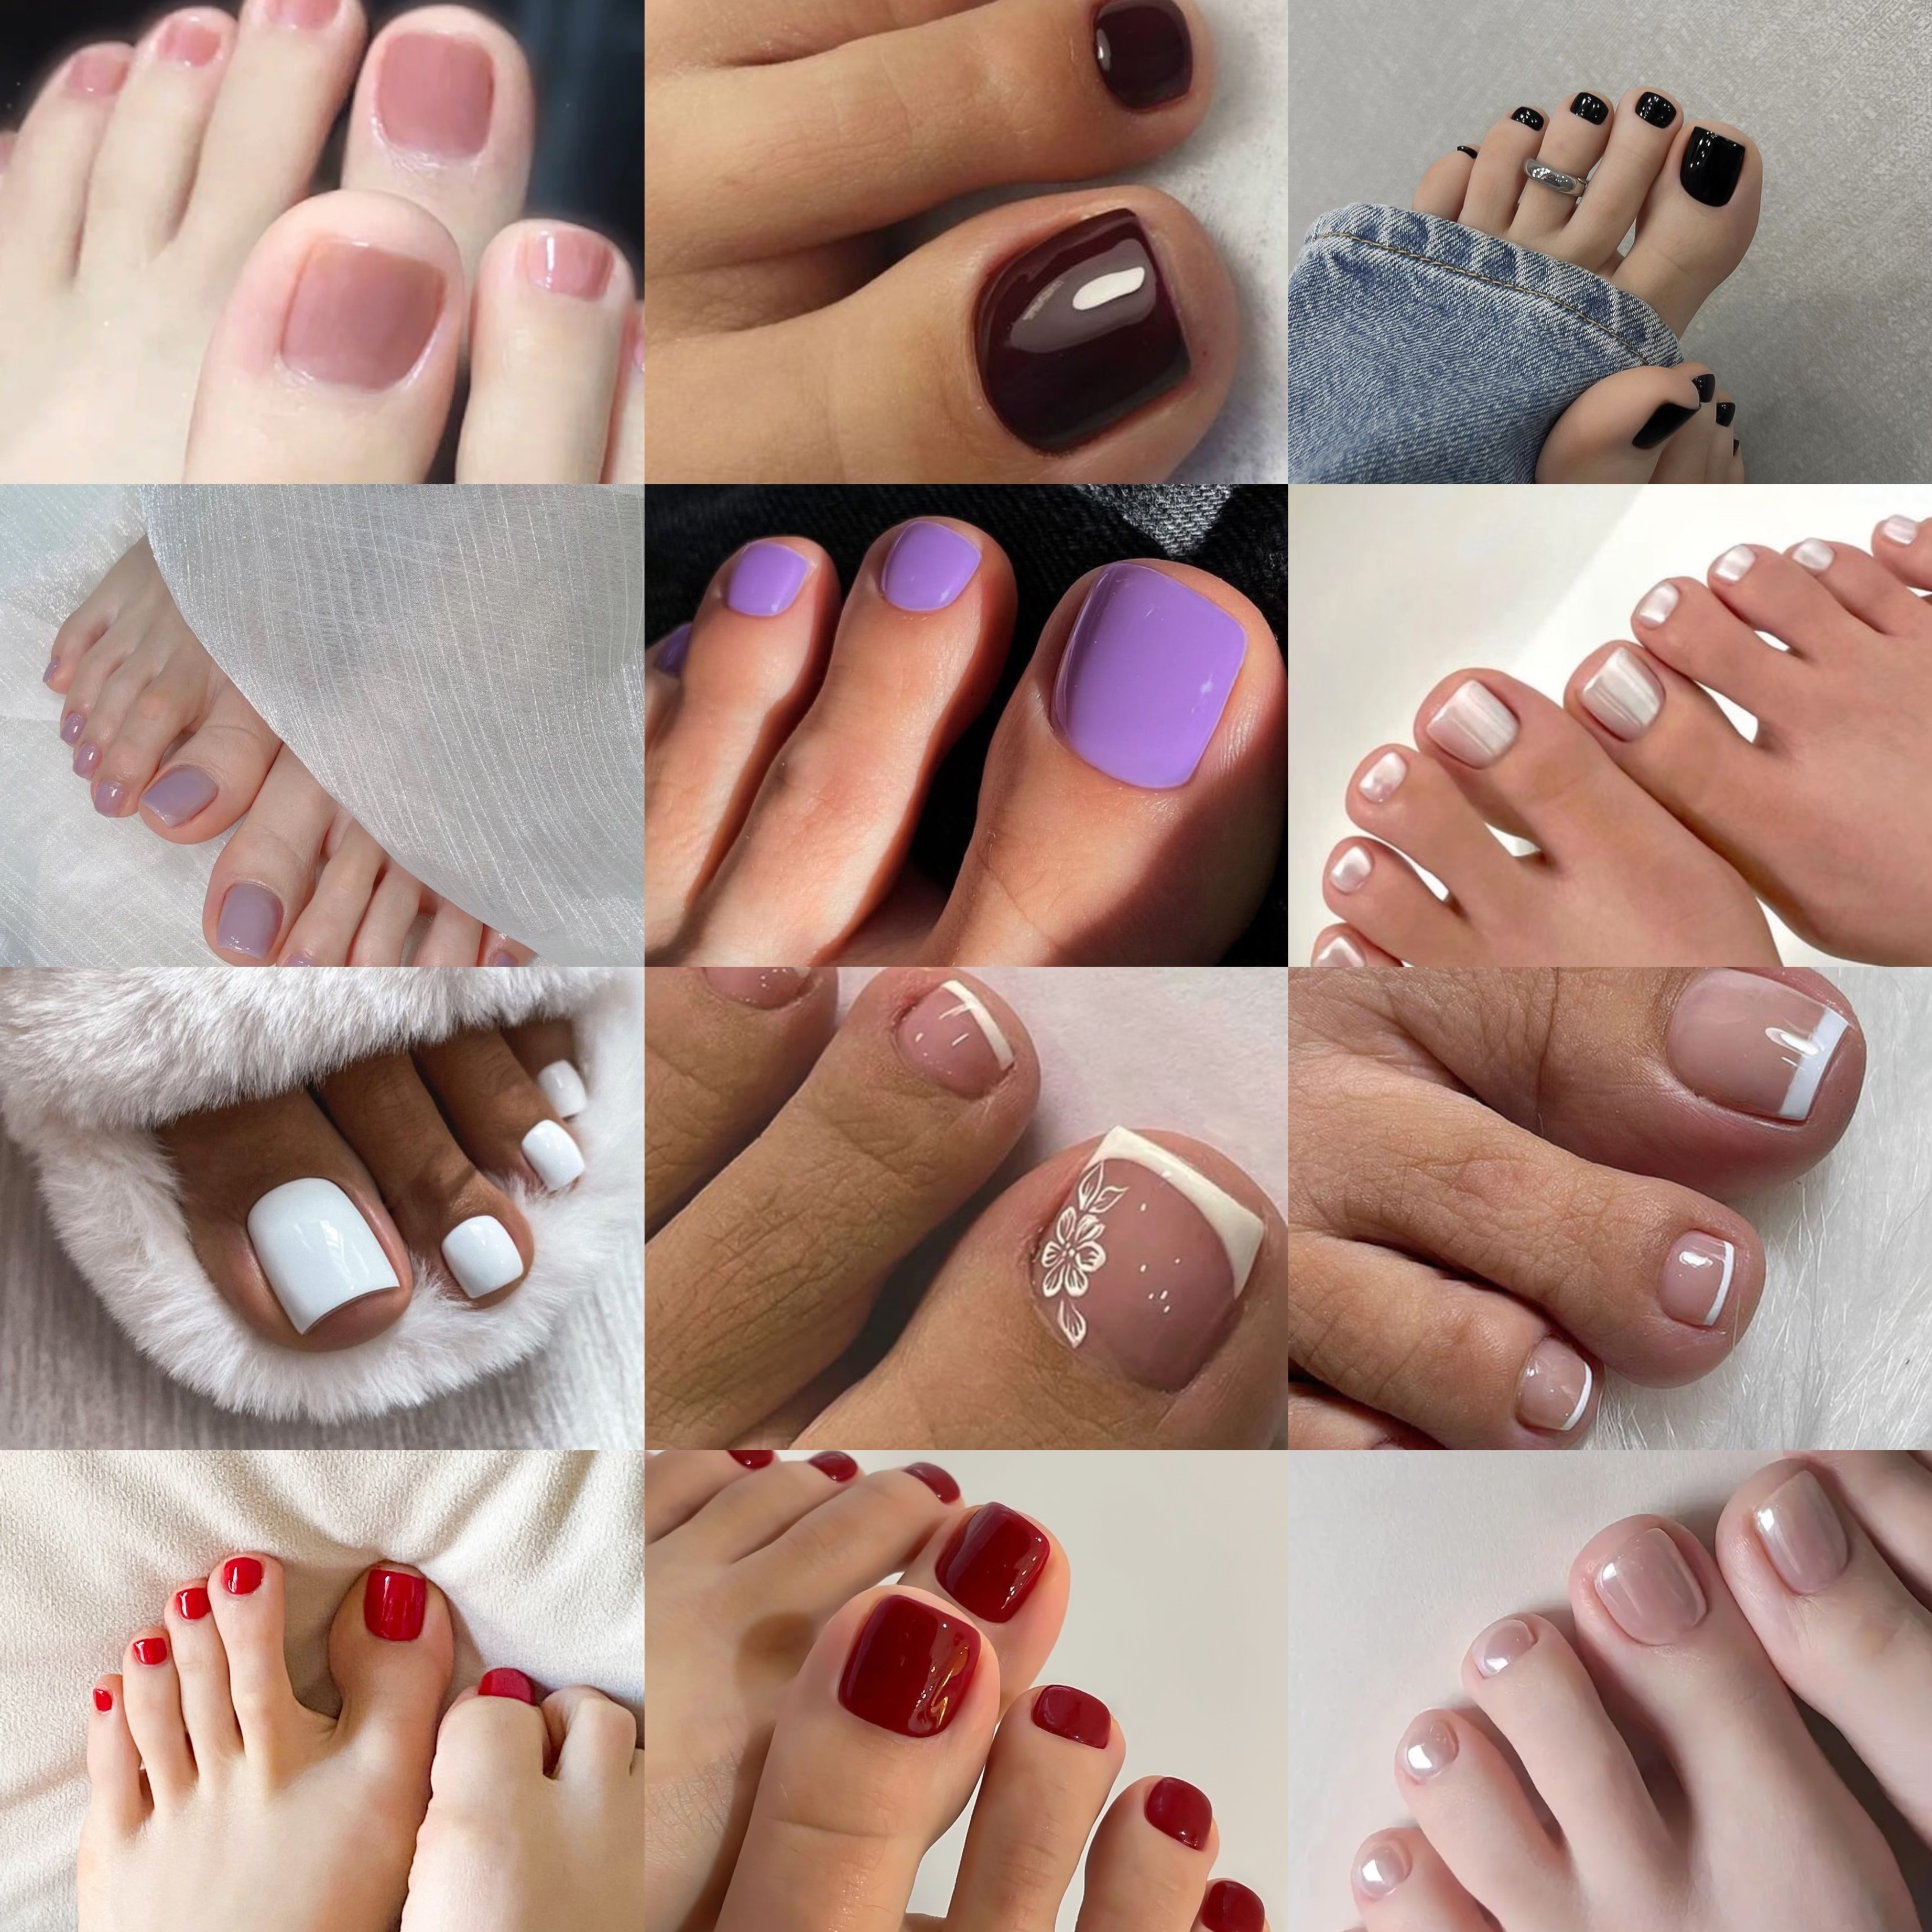 11 Cute Toe Nail Art Designs 2018 - Best Toenail Polish Ideas